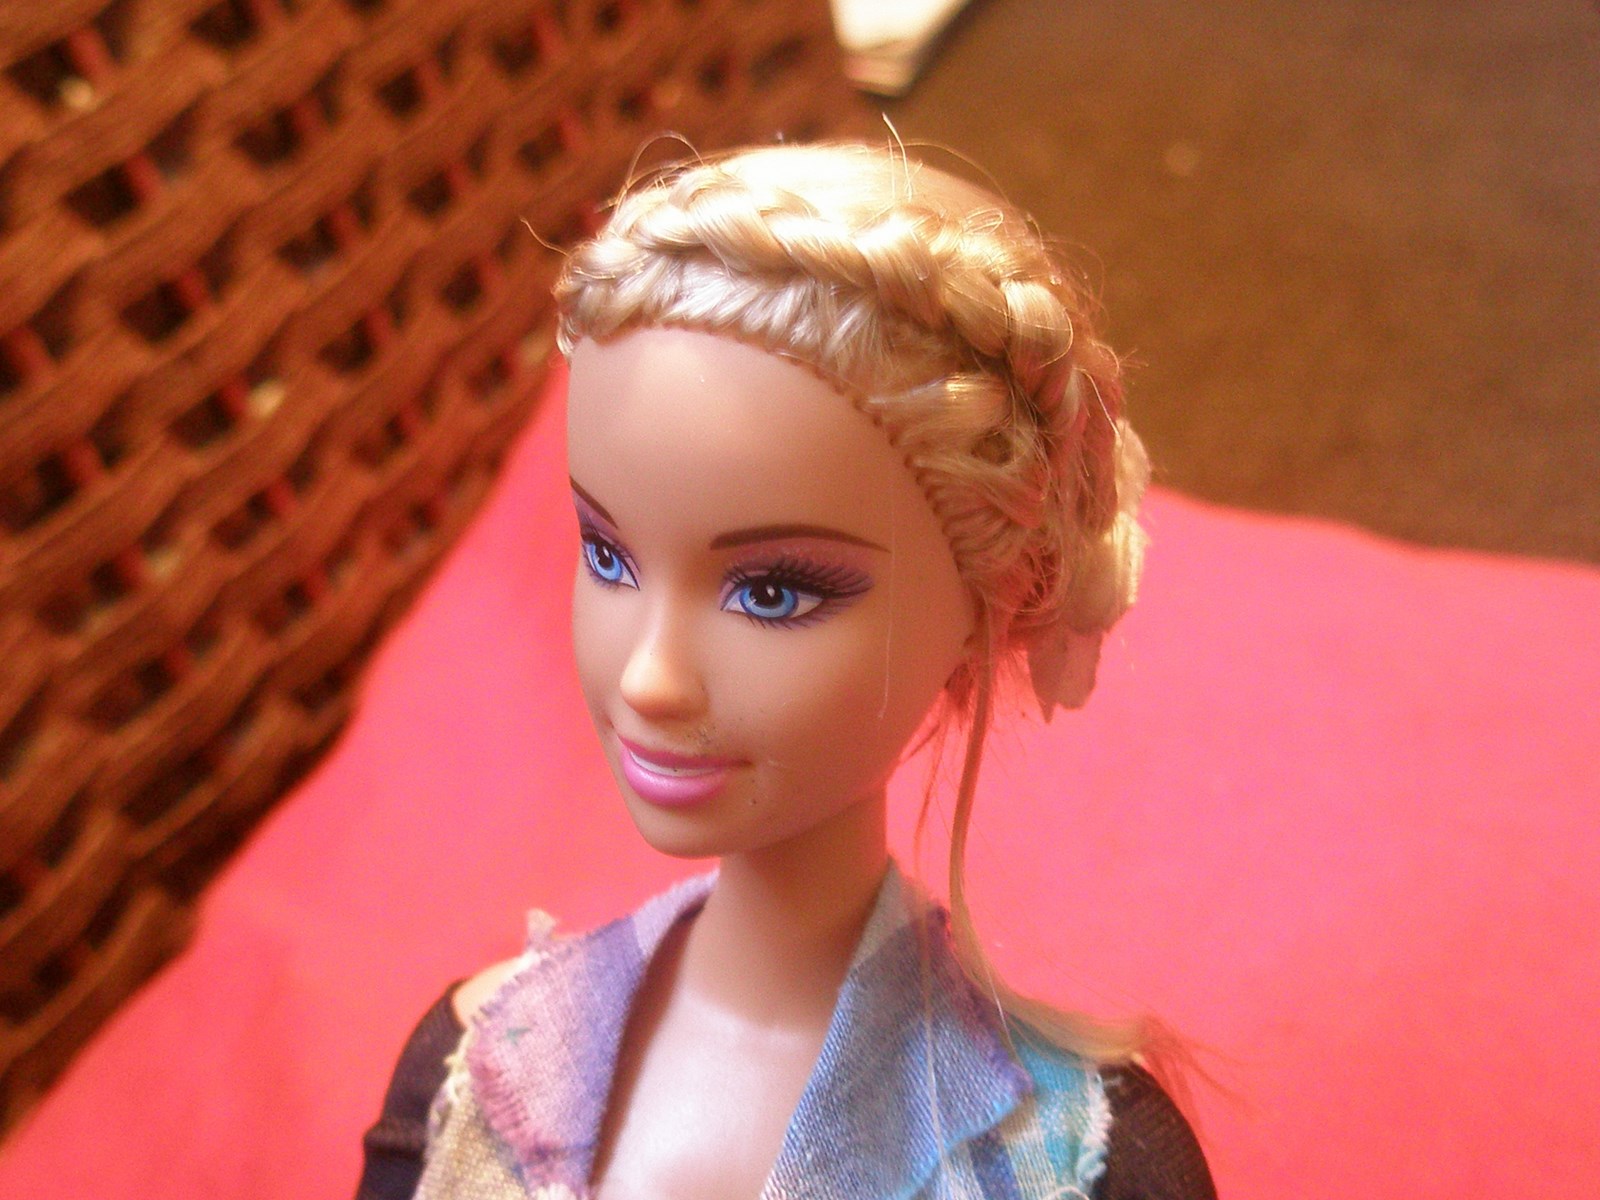 Coiffure : voici comment reproduire le chignon iconique de Barbie - Elle